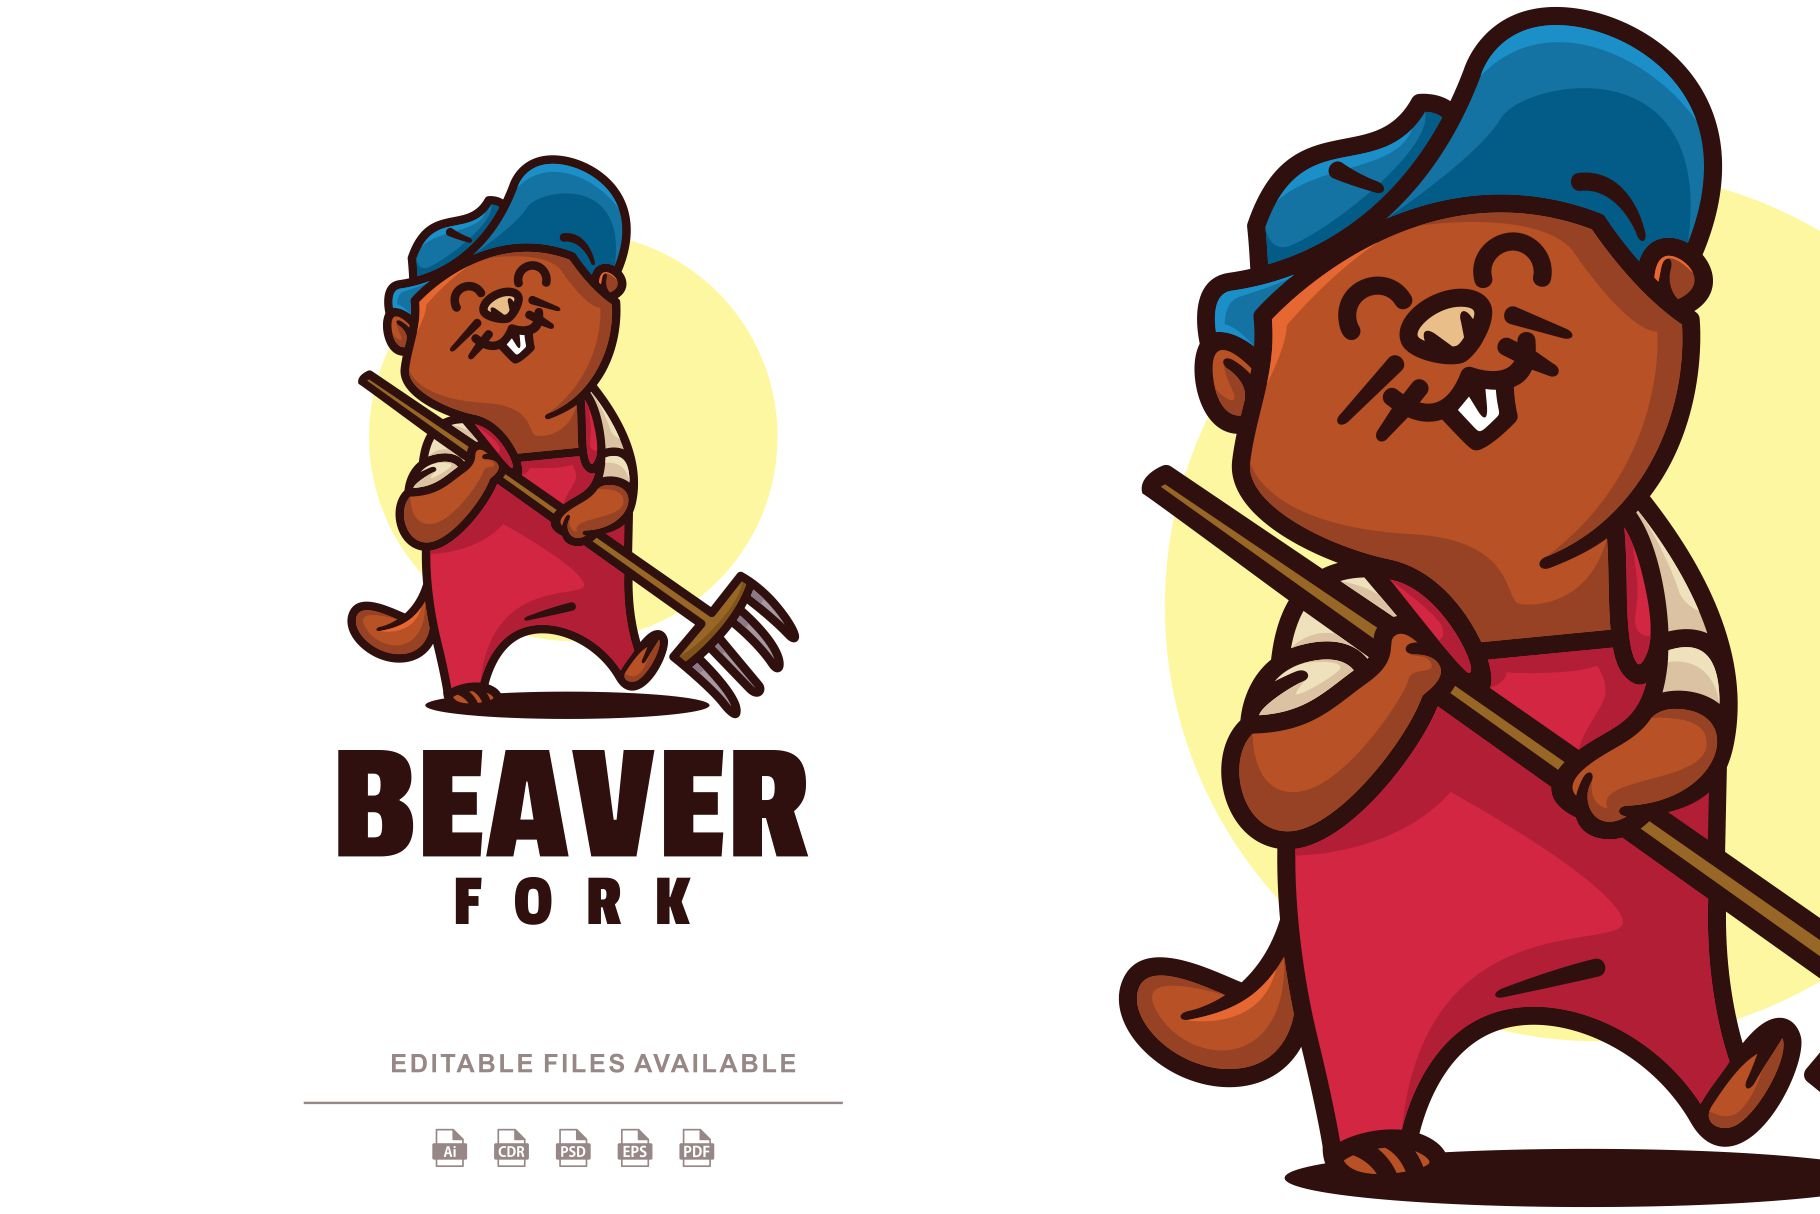 Beaver Cartoon Logo cover image.